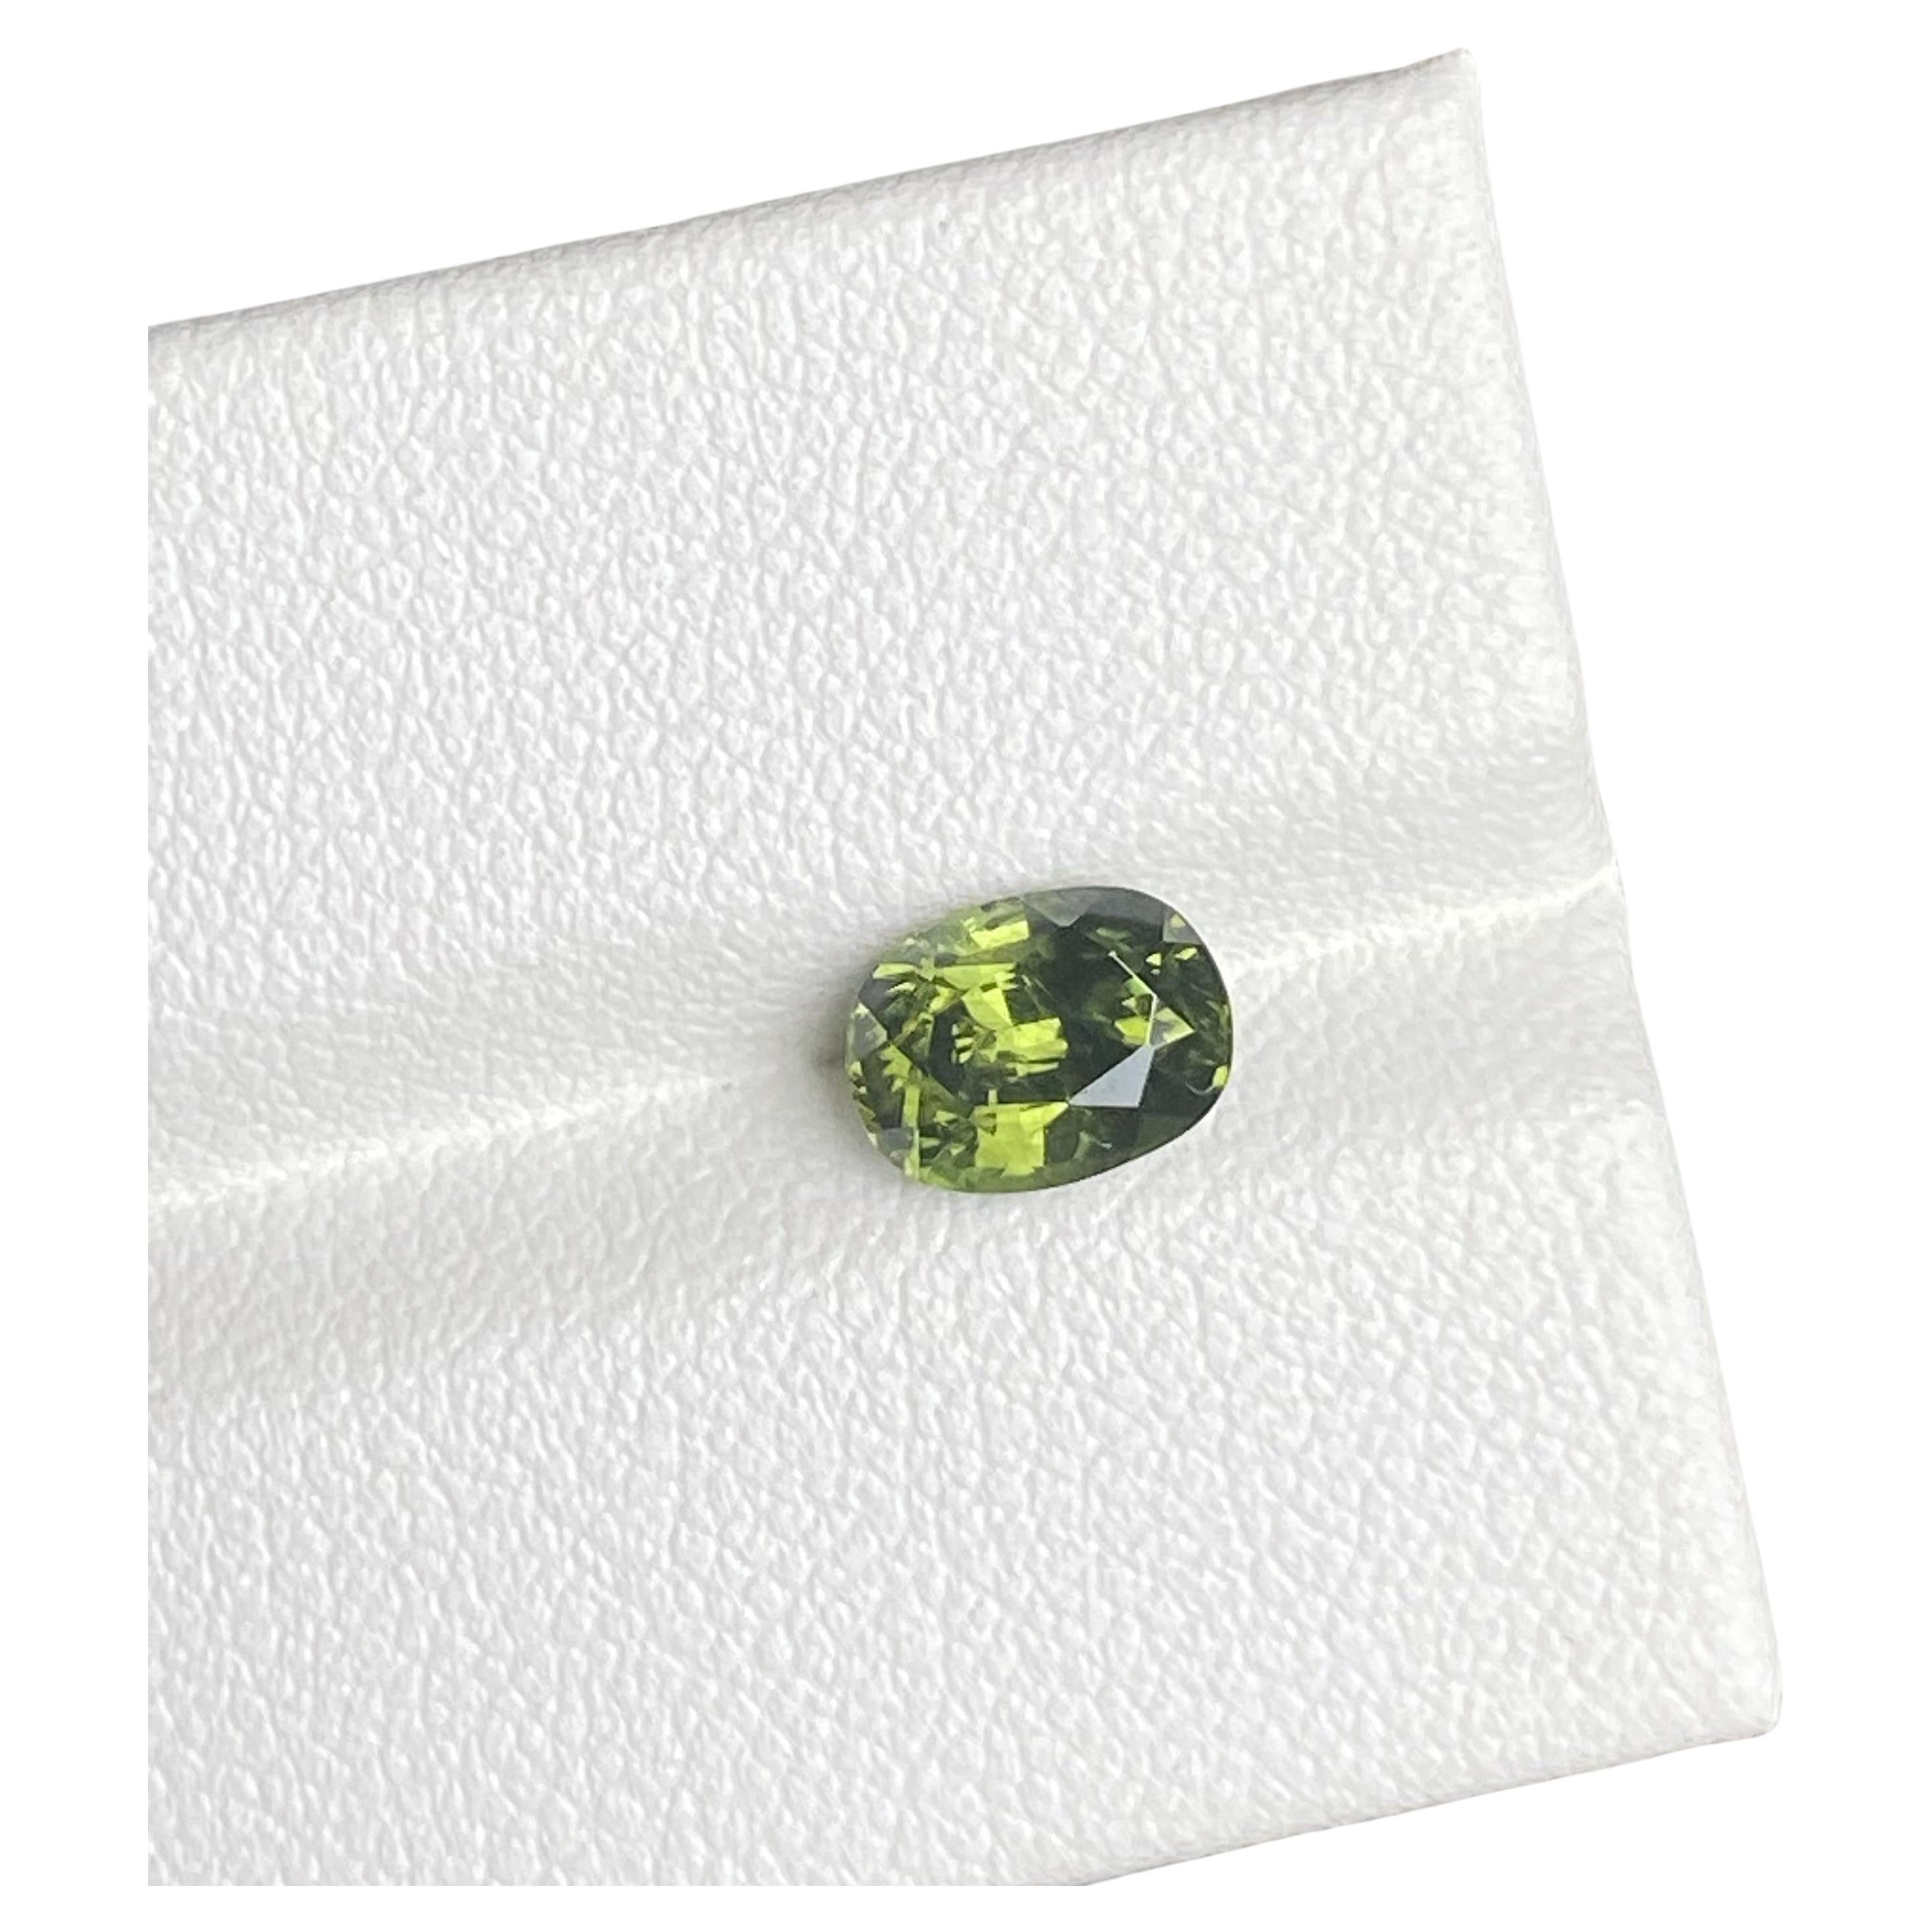 Natural Green Zircon Gemstone 1.50 Carat Ceylon Origin For Sale